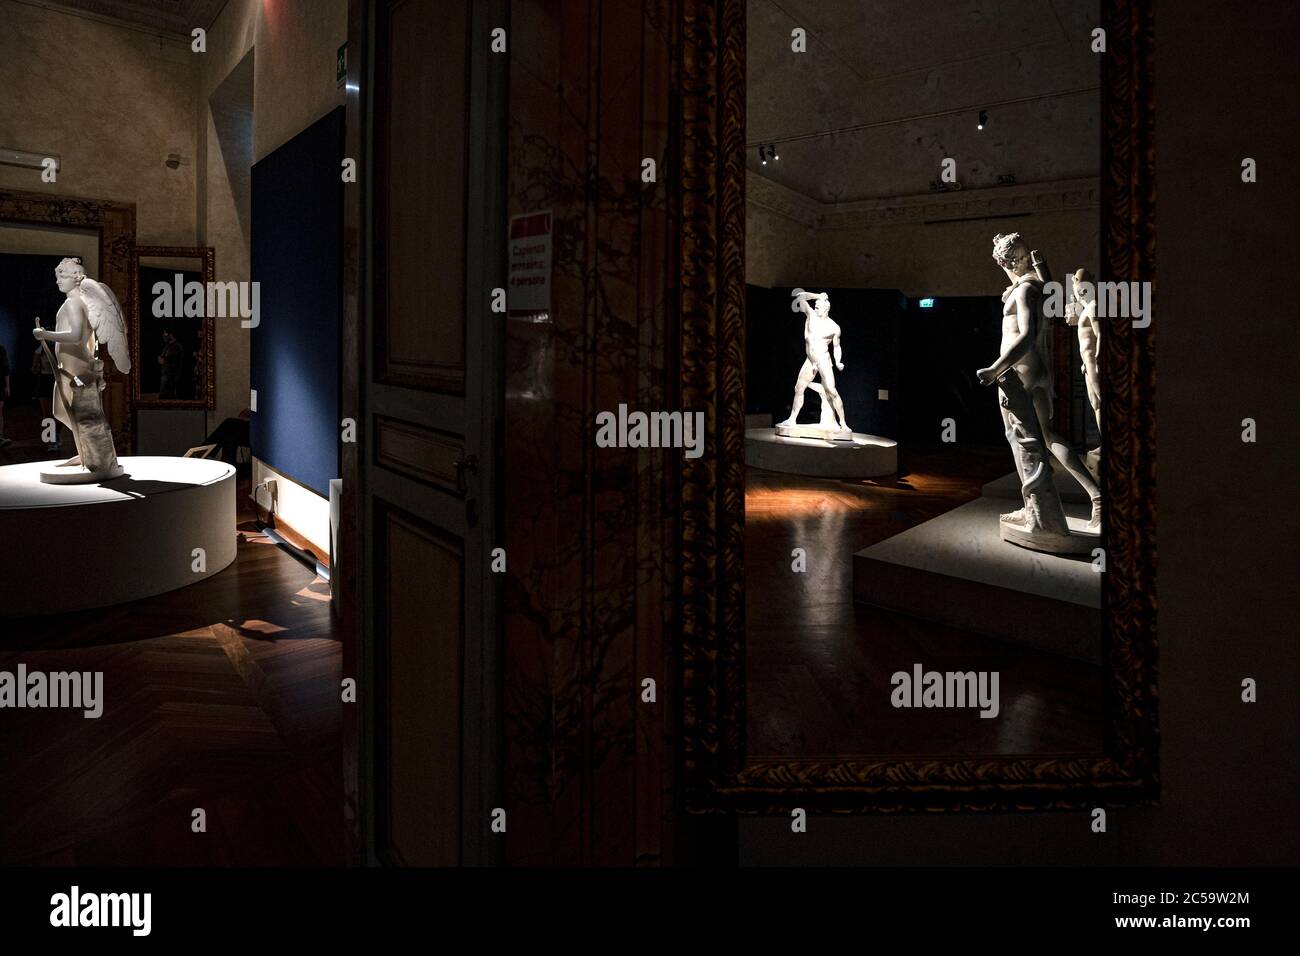 Italy Lazio Statues by Antonio Canova, in the exhibition at Palazzo Braschi in Rome Stock Photo